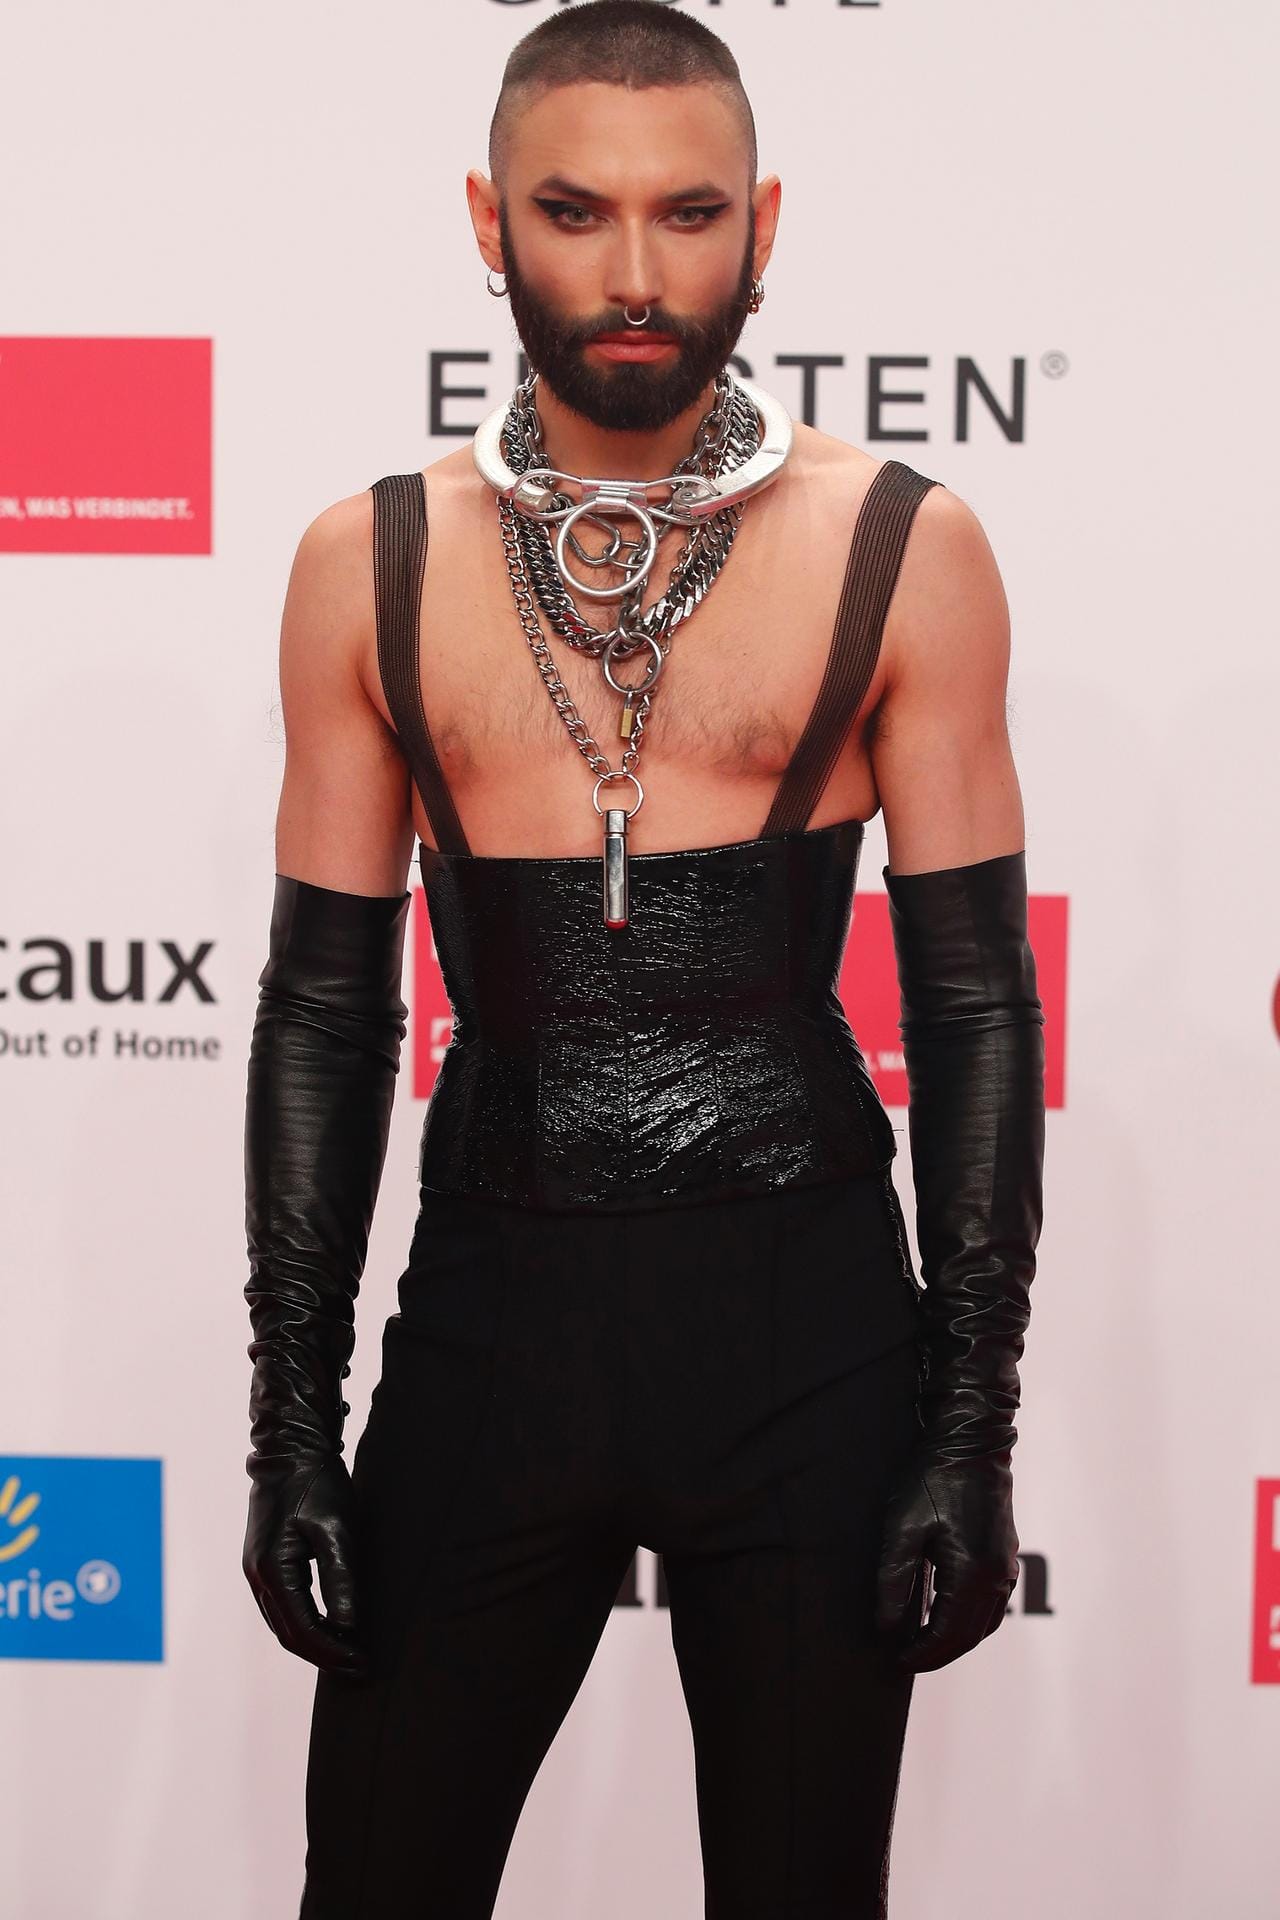 Travestiekünstler Conchita Wurst